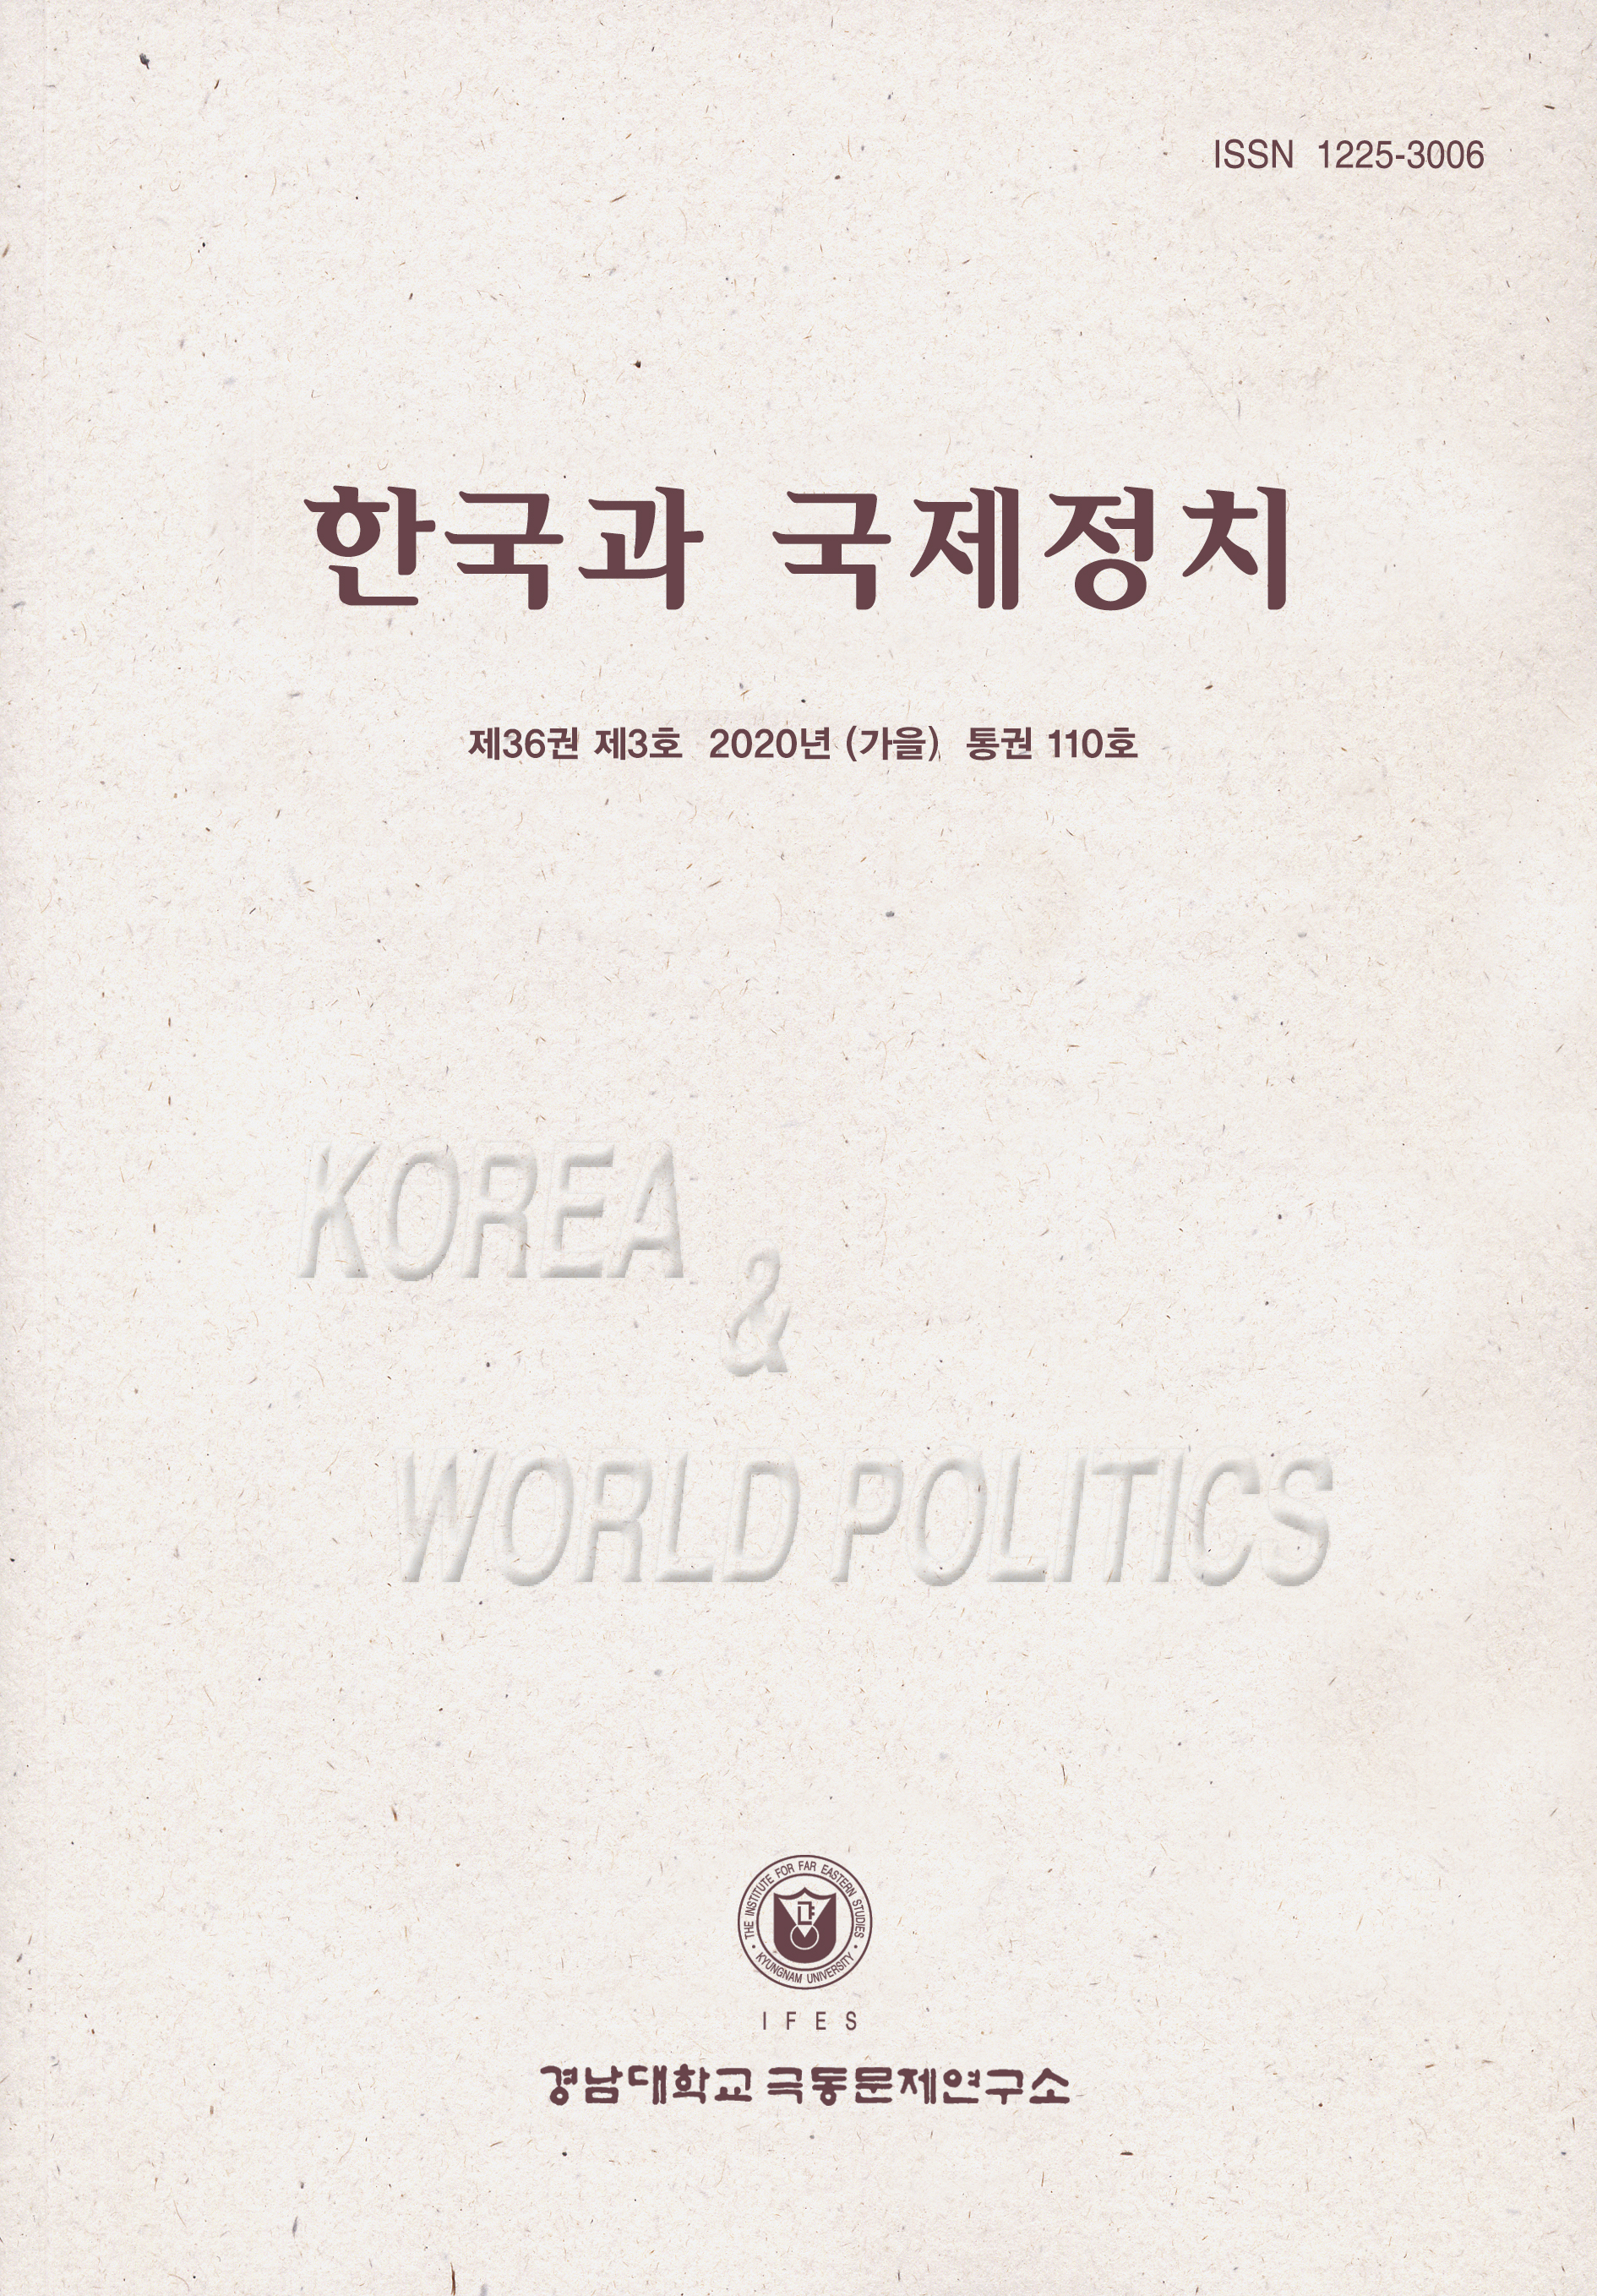 Korea and World Politics, Vol.36, No.3